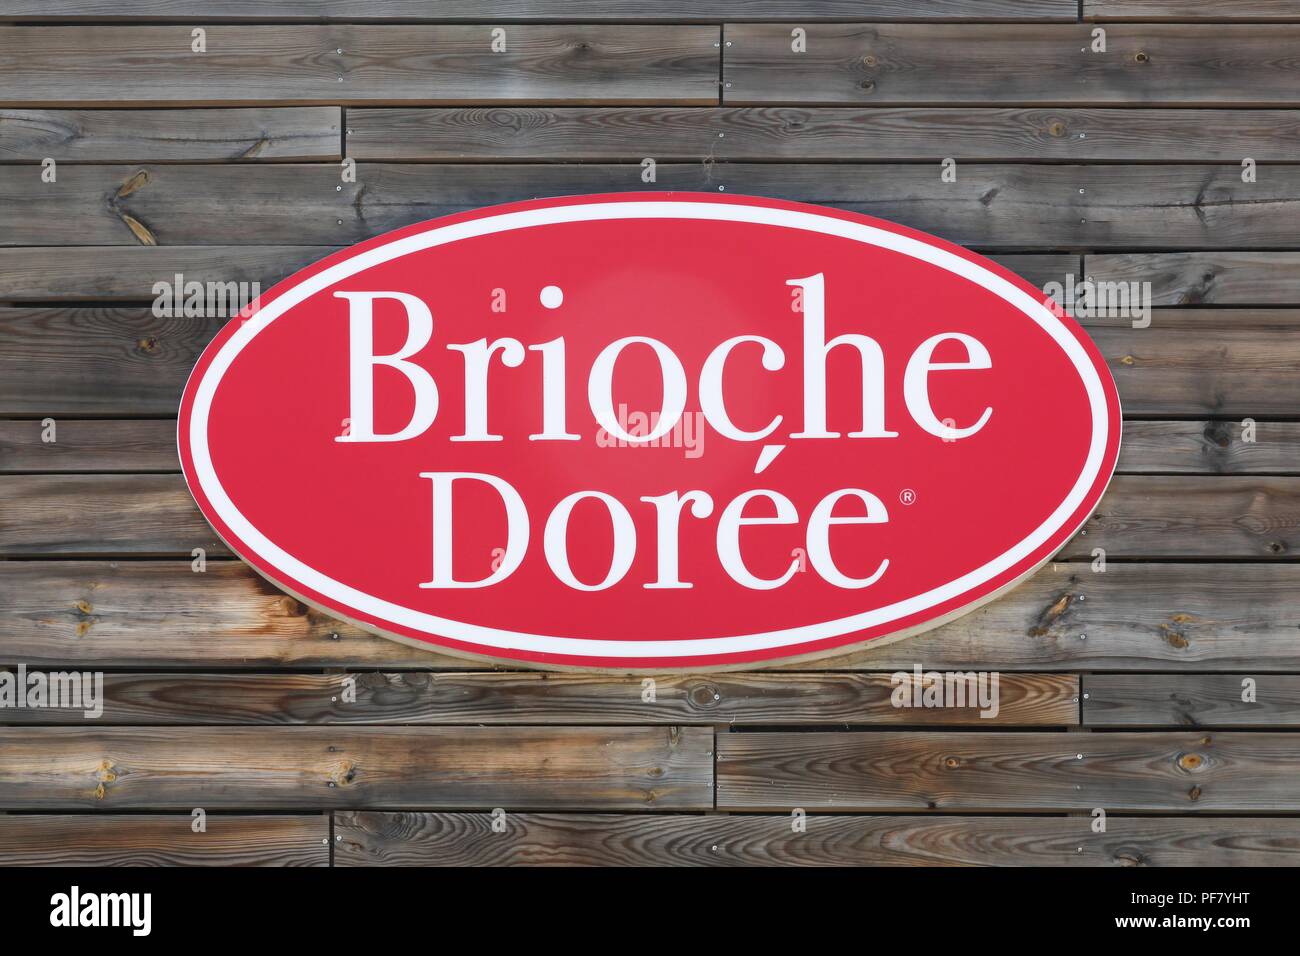 Marguerittes, France - 1 juillet 2018 : Brioche Doree logo sur un mur. Brioche Dorée est une chaîne française de café/boulangerie restaurants fondée en 1976 Banque D'Images